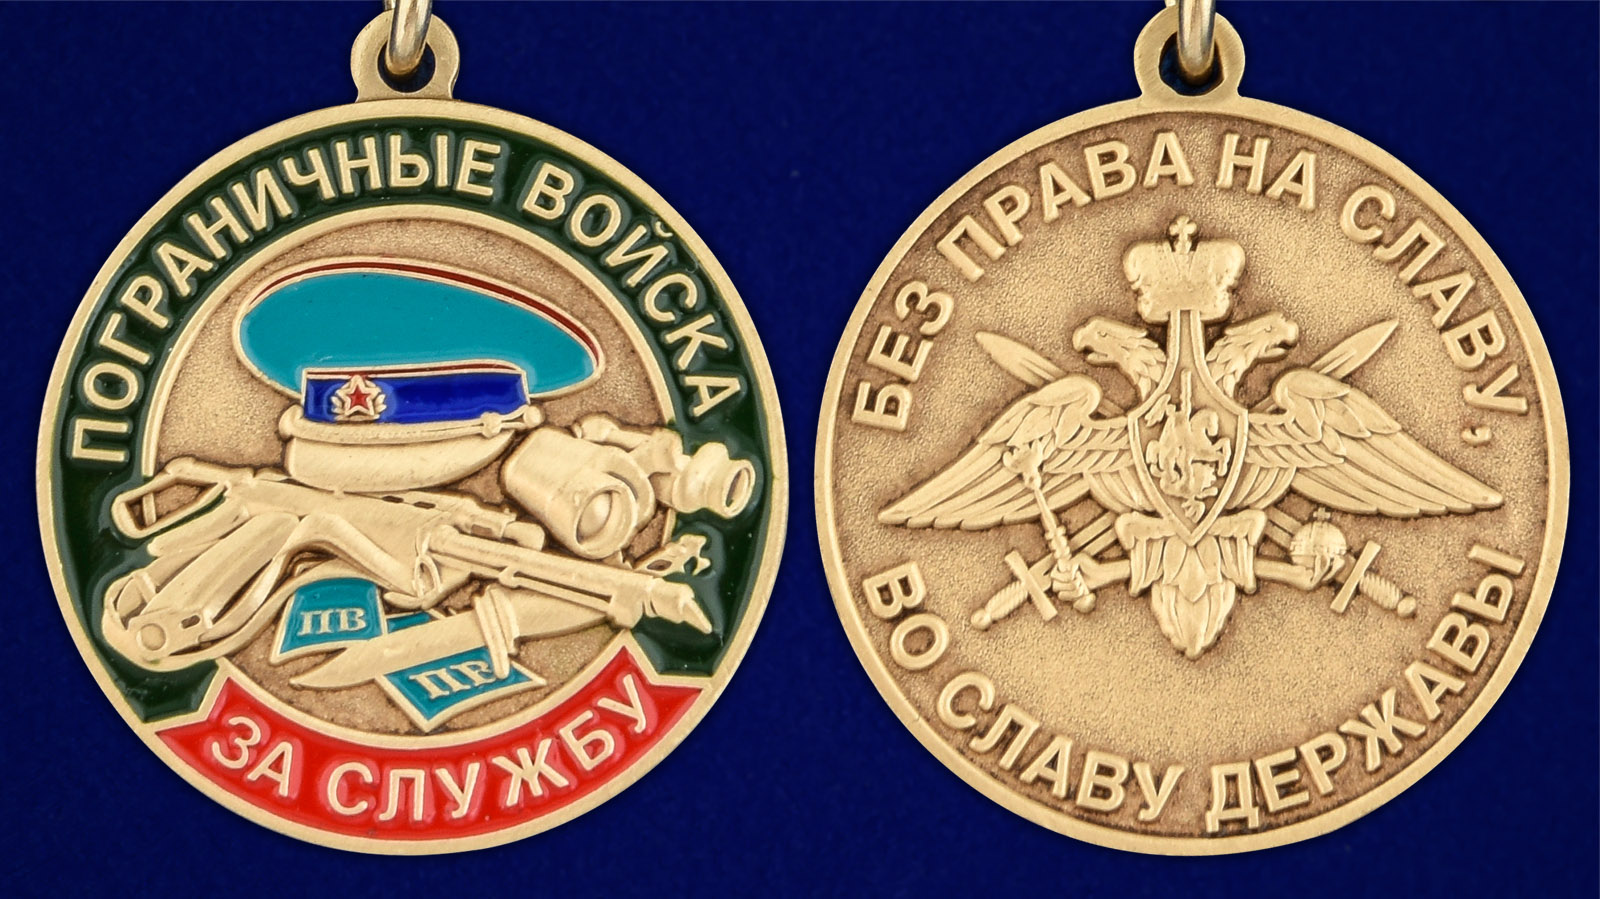 Памятная медаль "За службу в Погранвойсках" - аверс и реверс